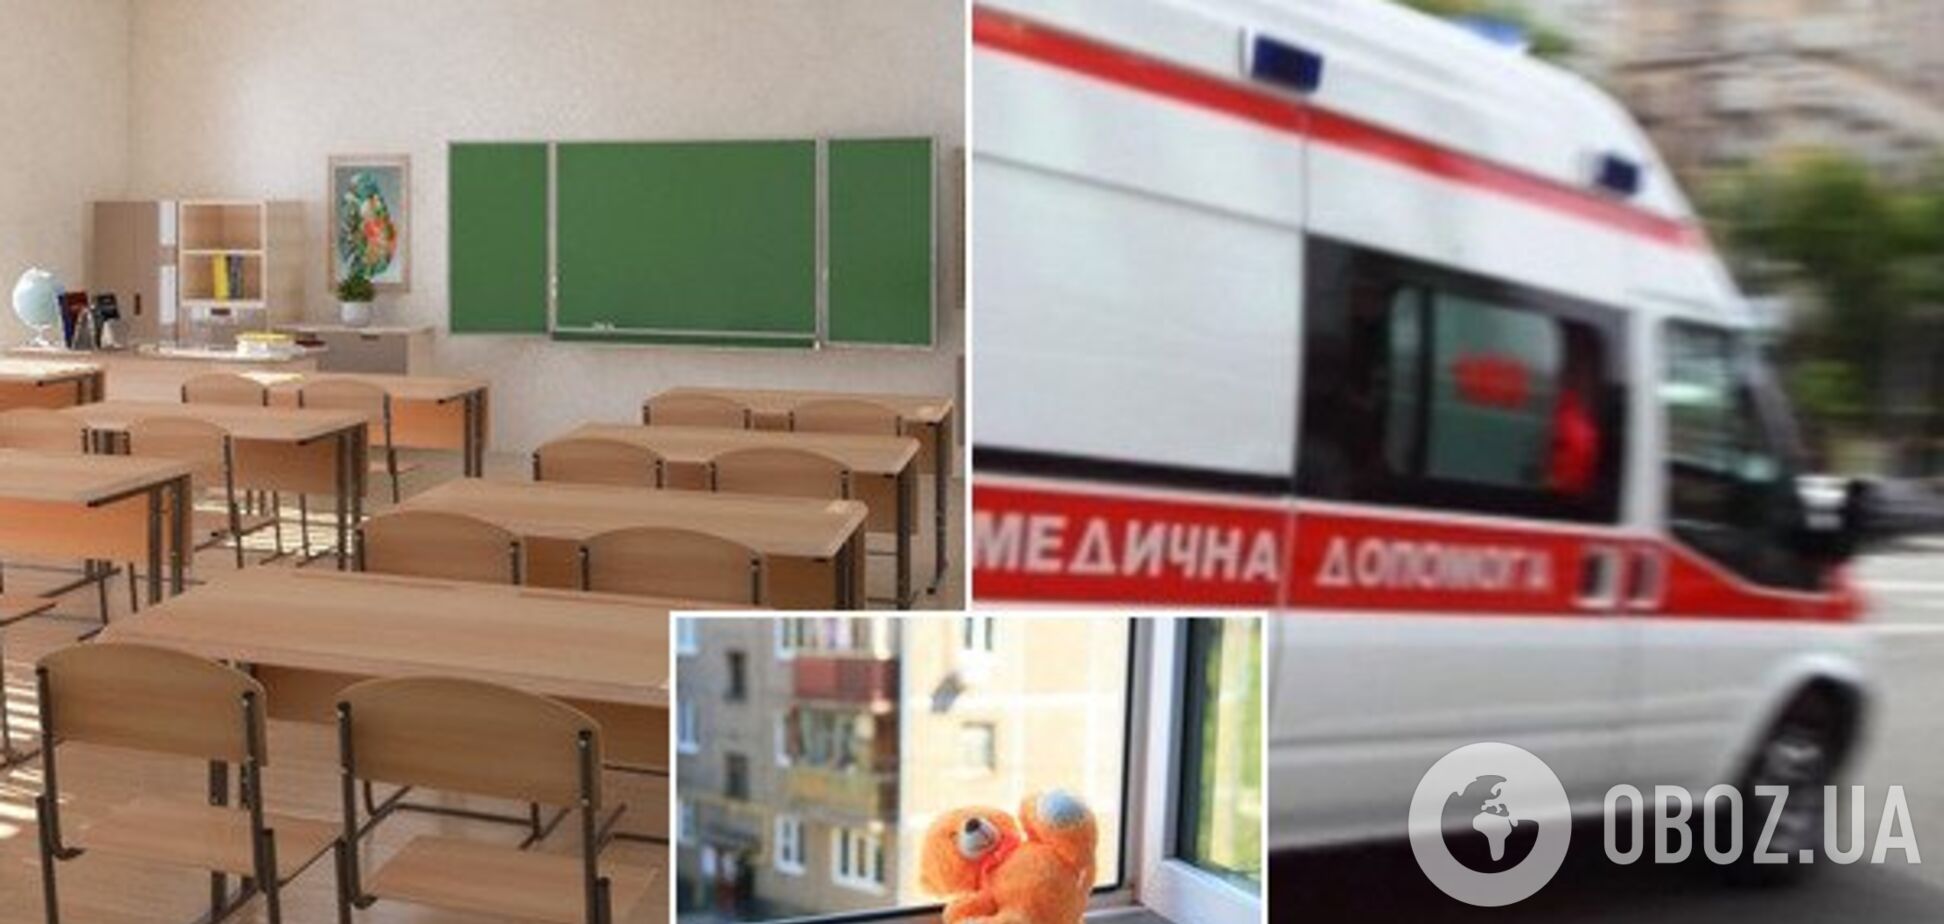 В Киеве девочка выпрыгнула из окна школы. Иллюстрация 